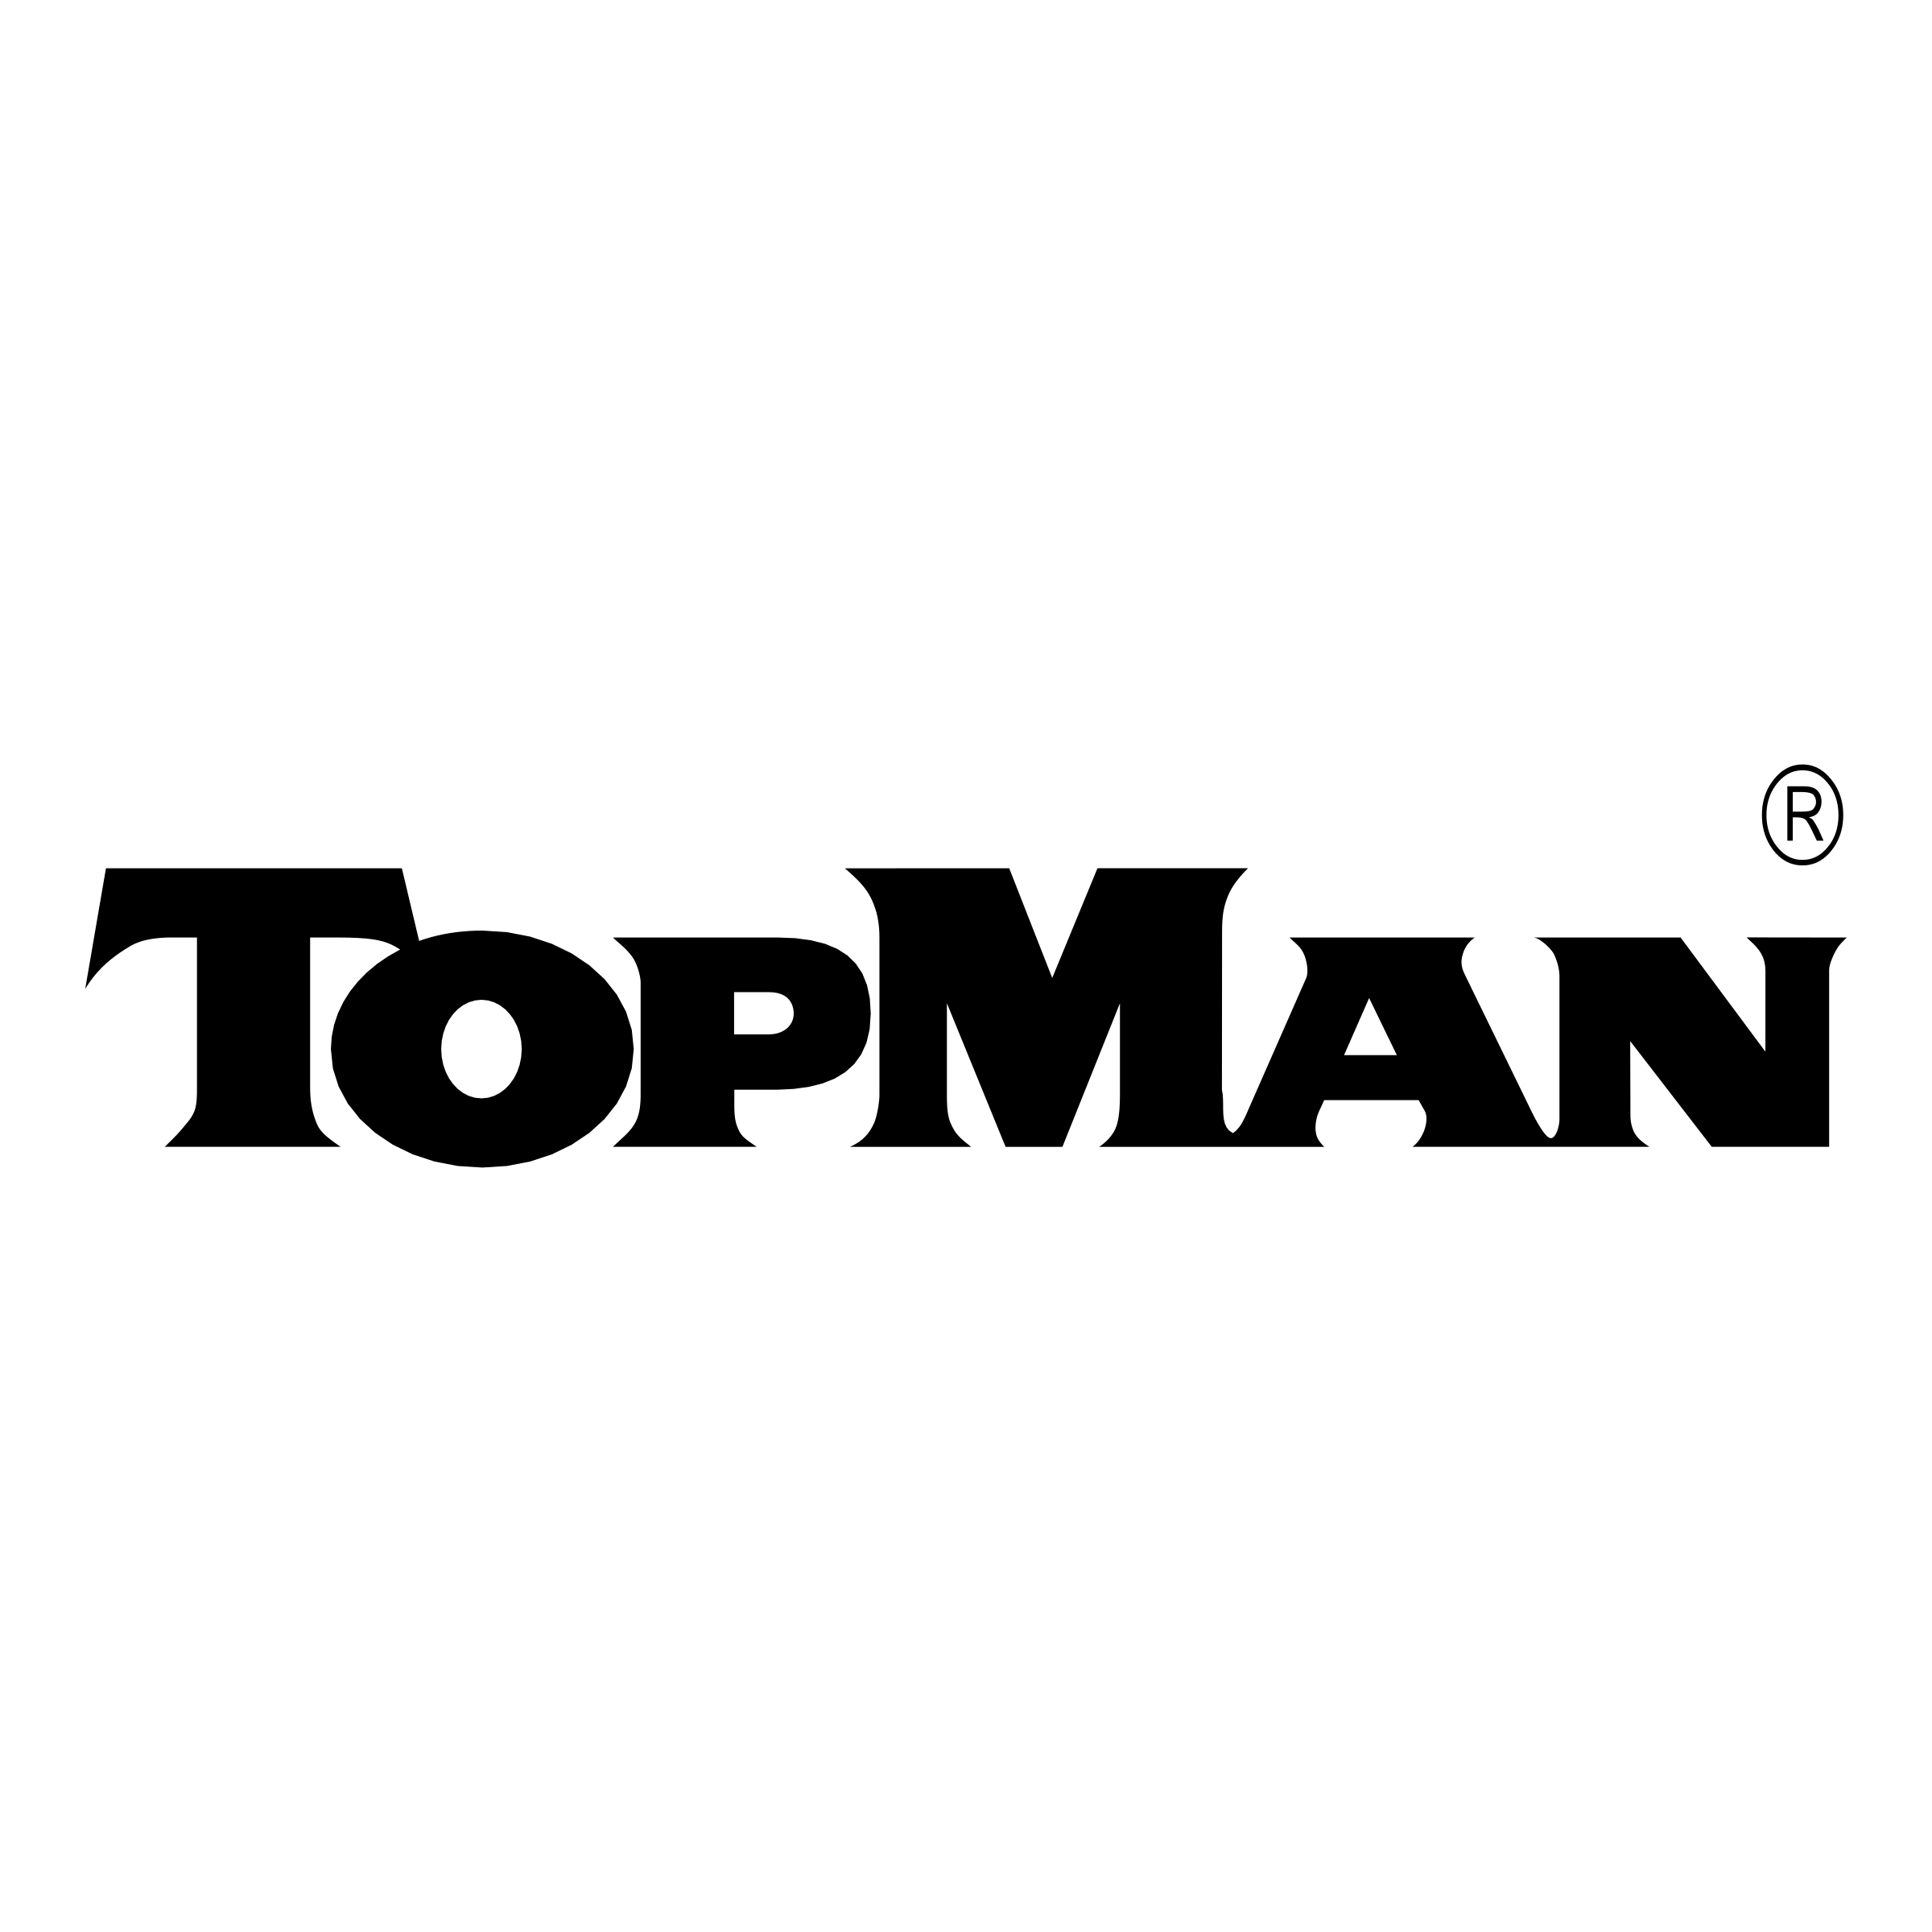 Topman Logo - LogoDix